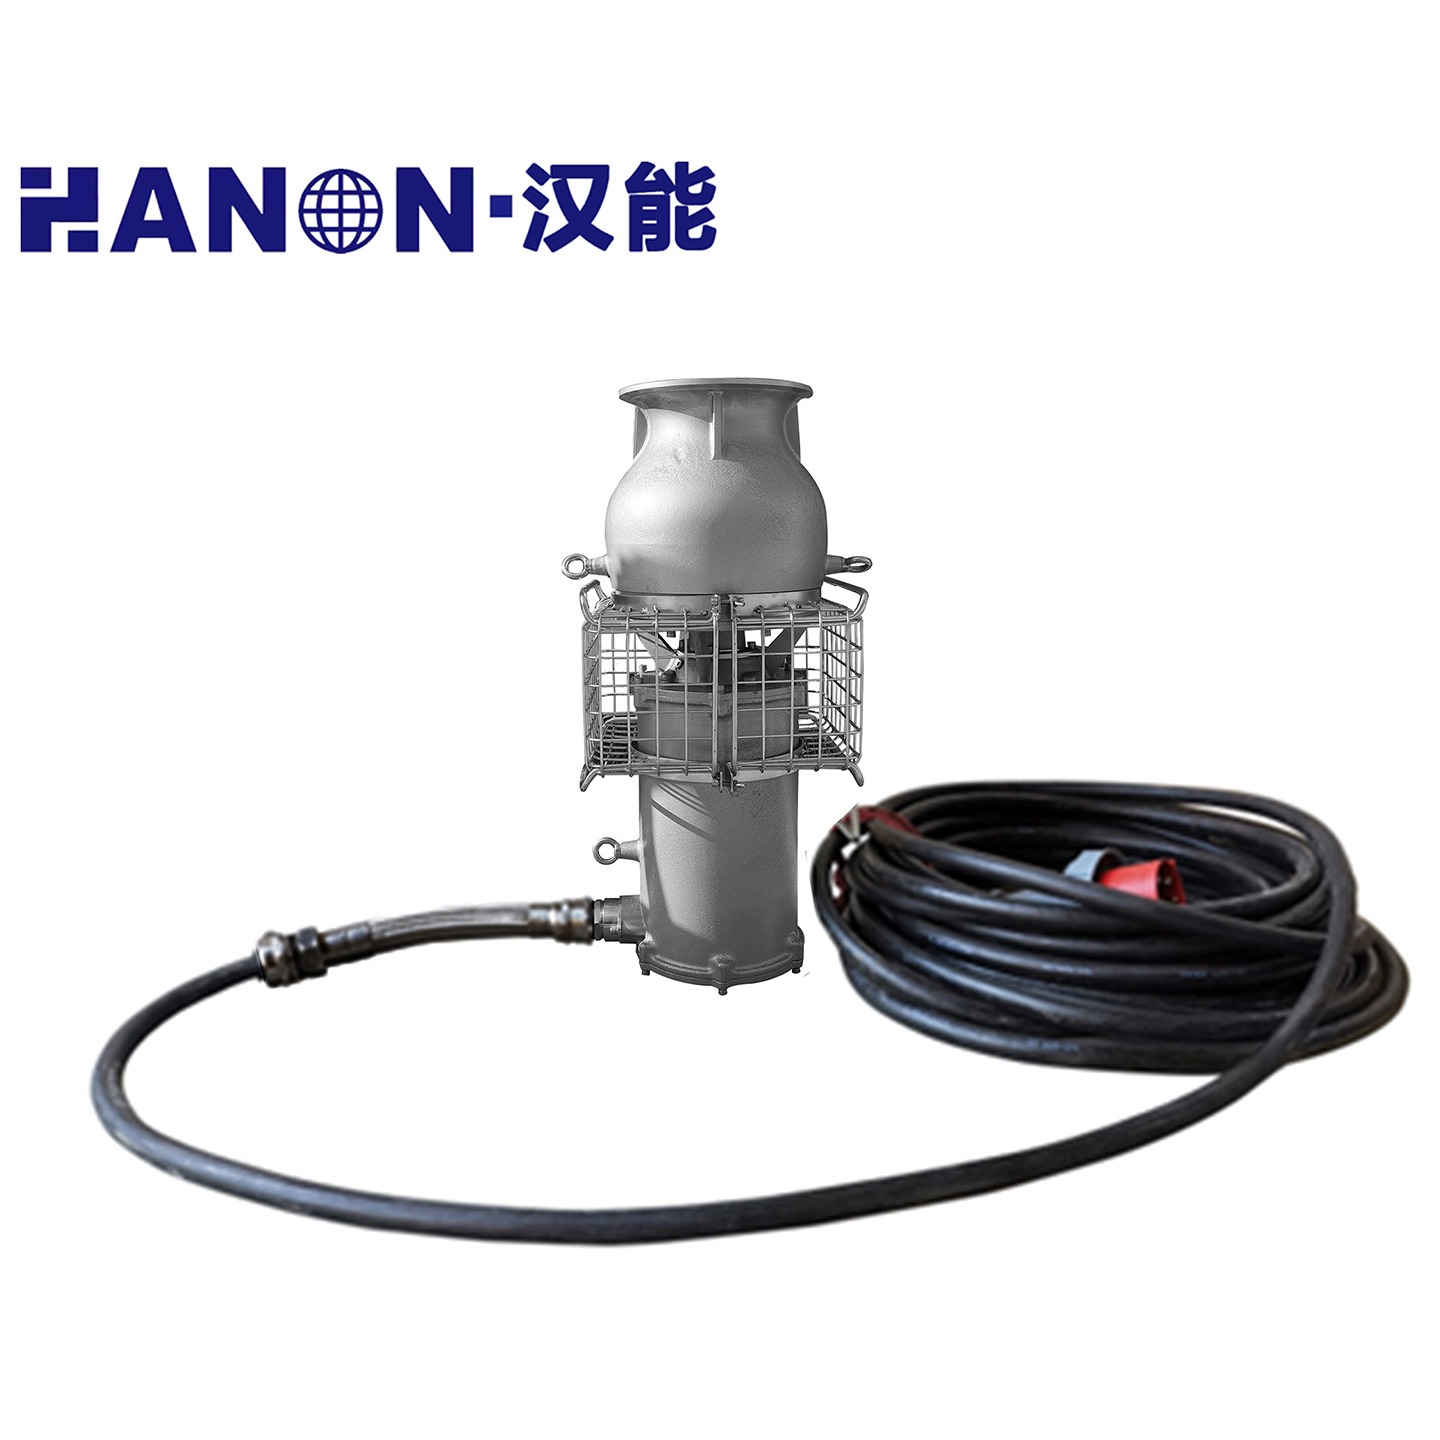 轻潜泵 便携式潜水泵 防汛泵 排涝泵 排水泵 汉能 DQZ系列 现货供应